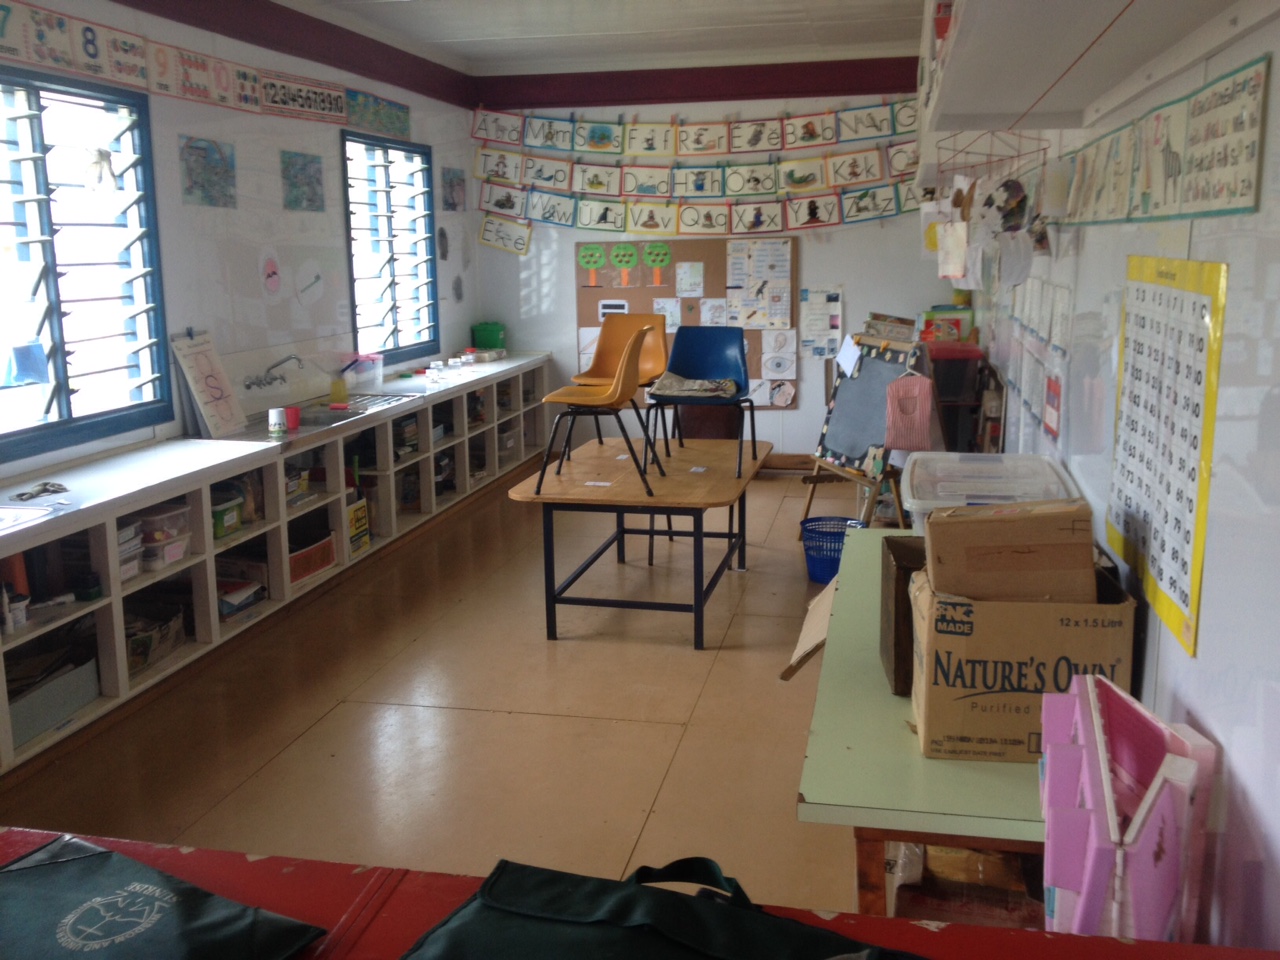  The kindergarten classroom 